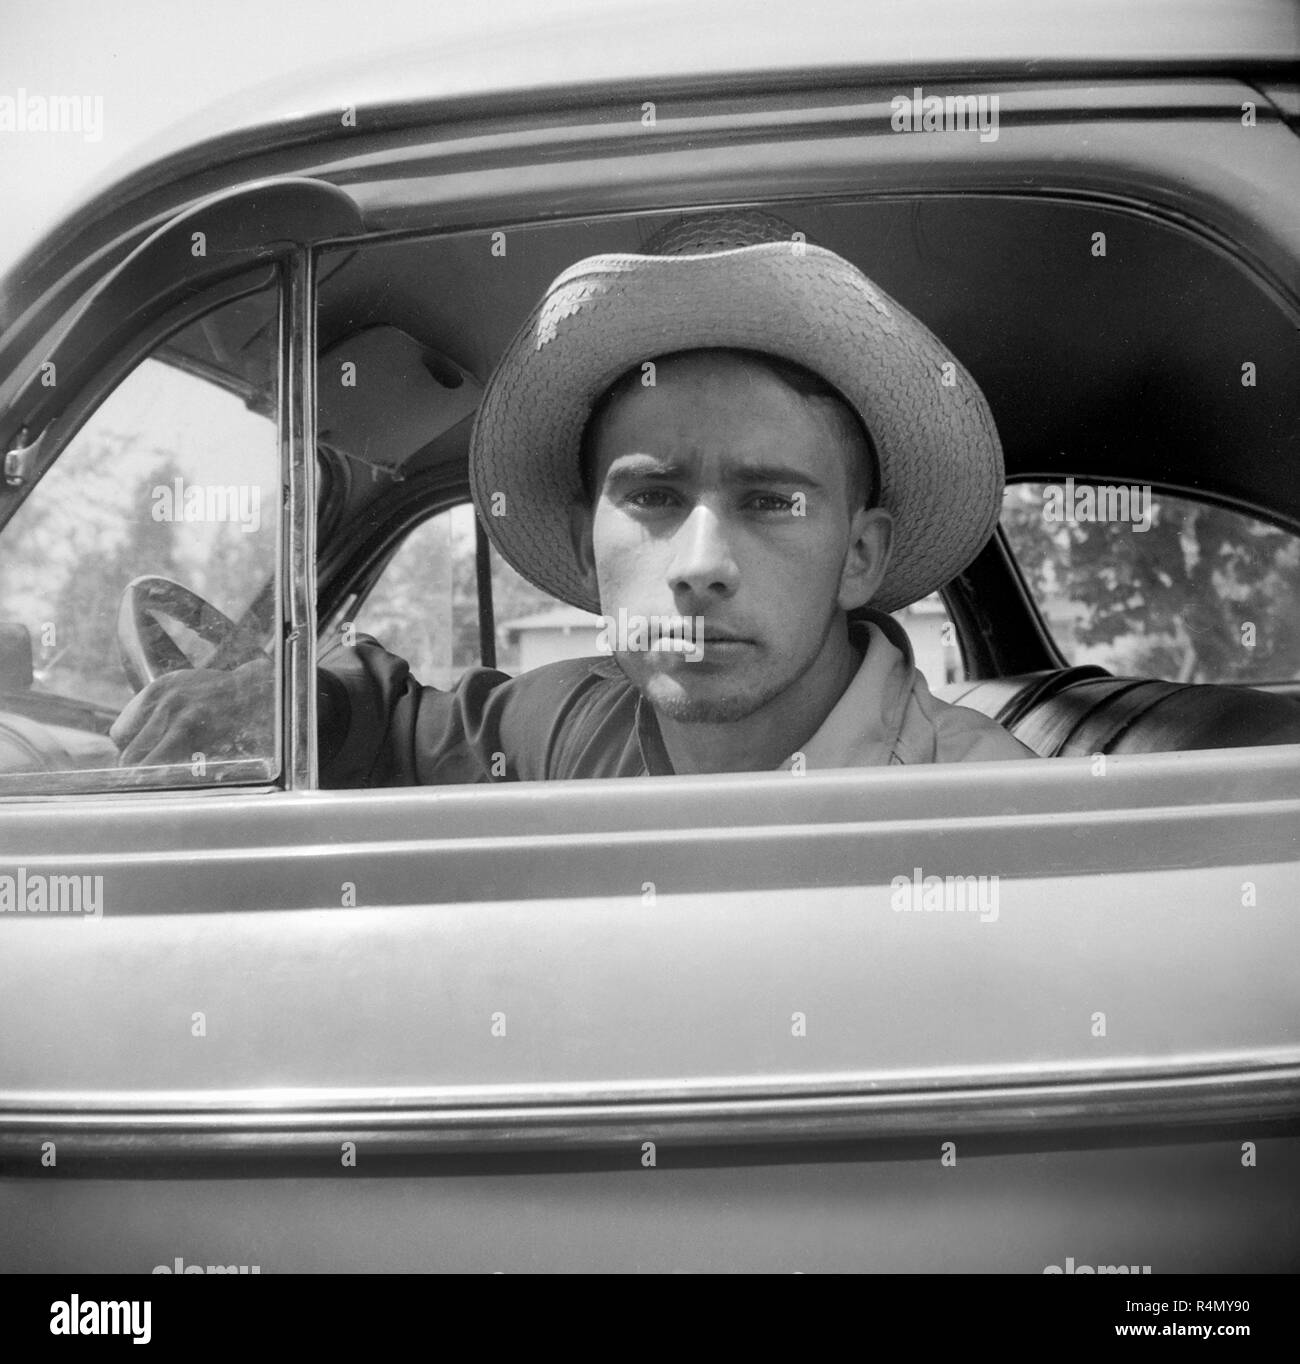 Ein junger Mann mit einem Cowboyhut schaut aus seinem Auto Fenster, Ca. 1955. Stockfoto